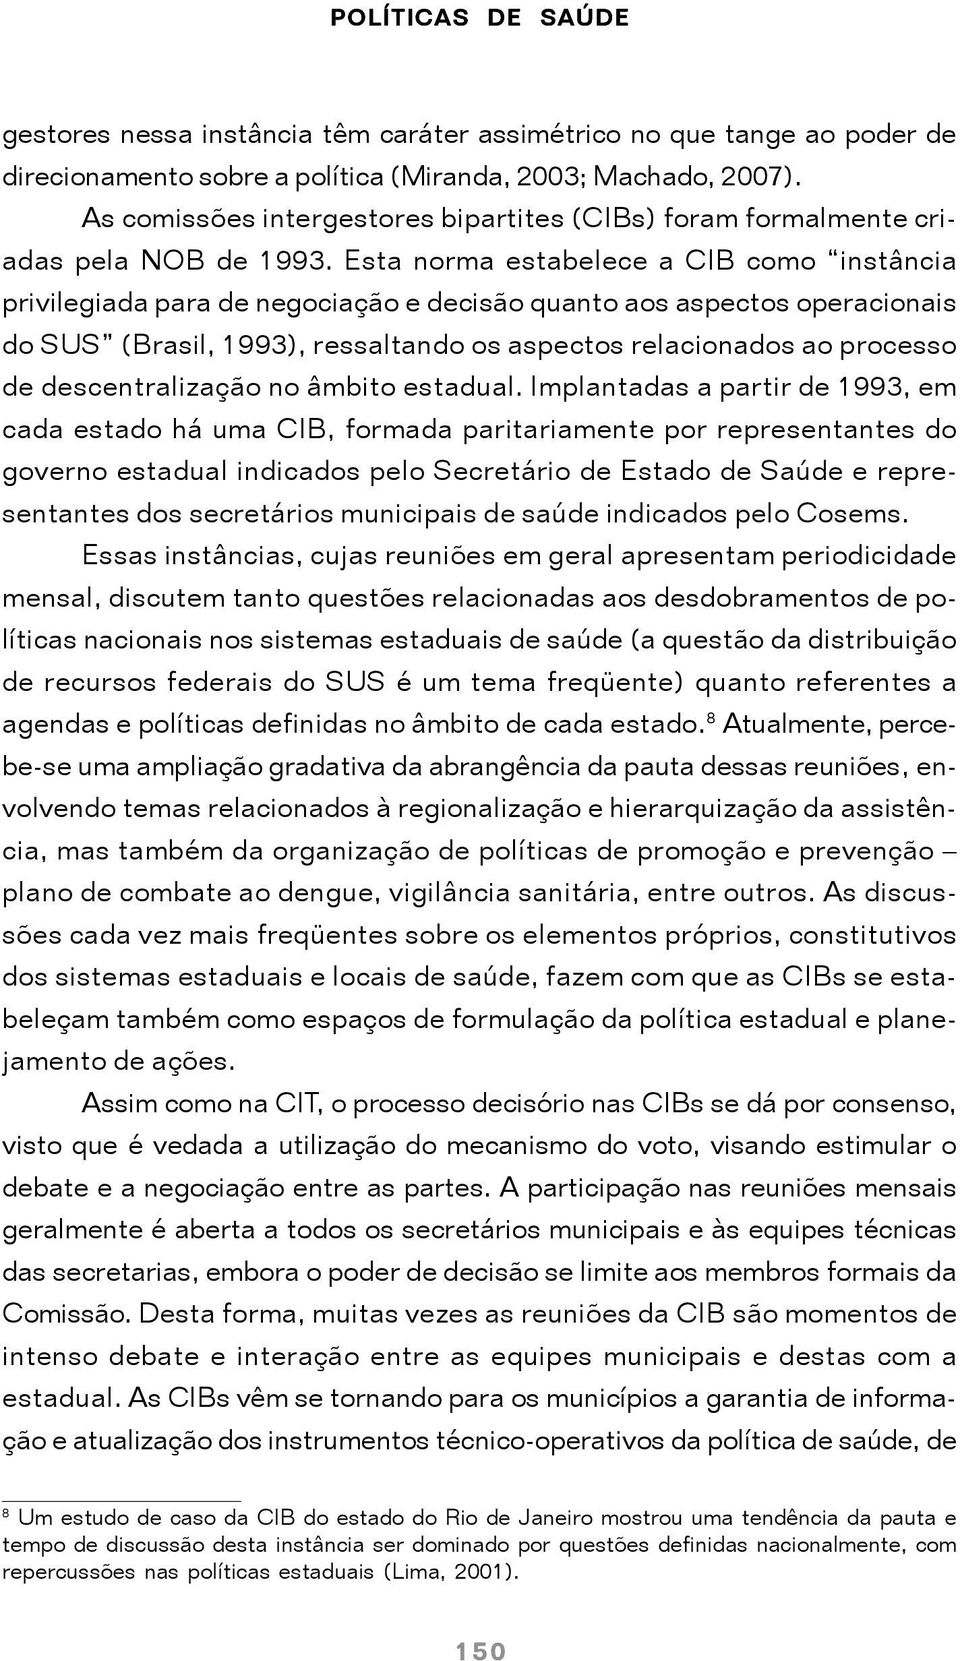 Esta norma estabelece a CIB como instância privilegiada para de negociação e decisão quanto aos aspectos operacionais do SUS (Brasil, 1993), ressaltando os aspectos relacionados ao processo de